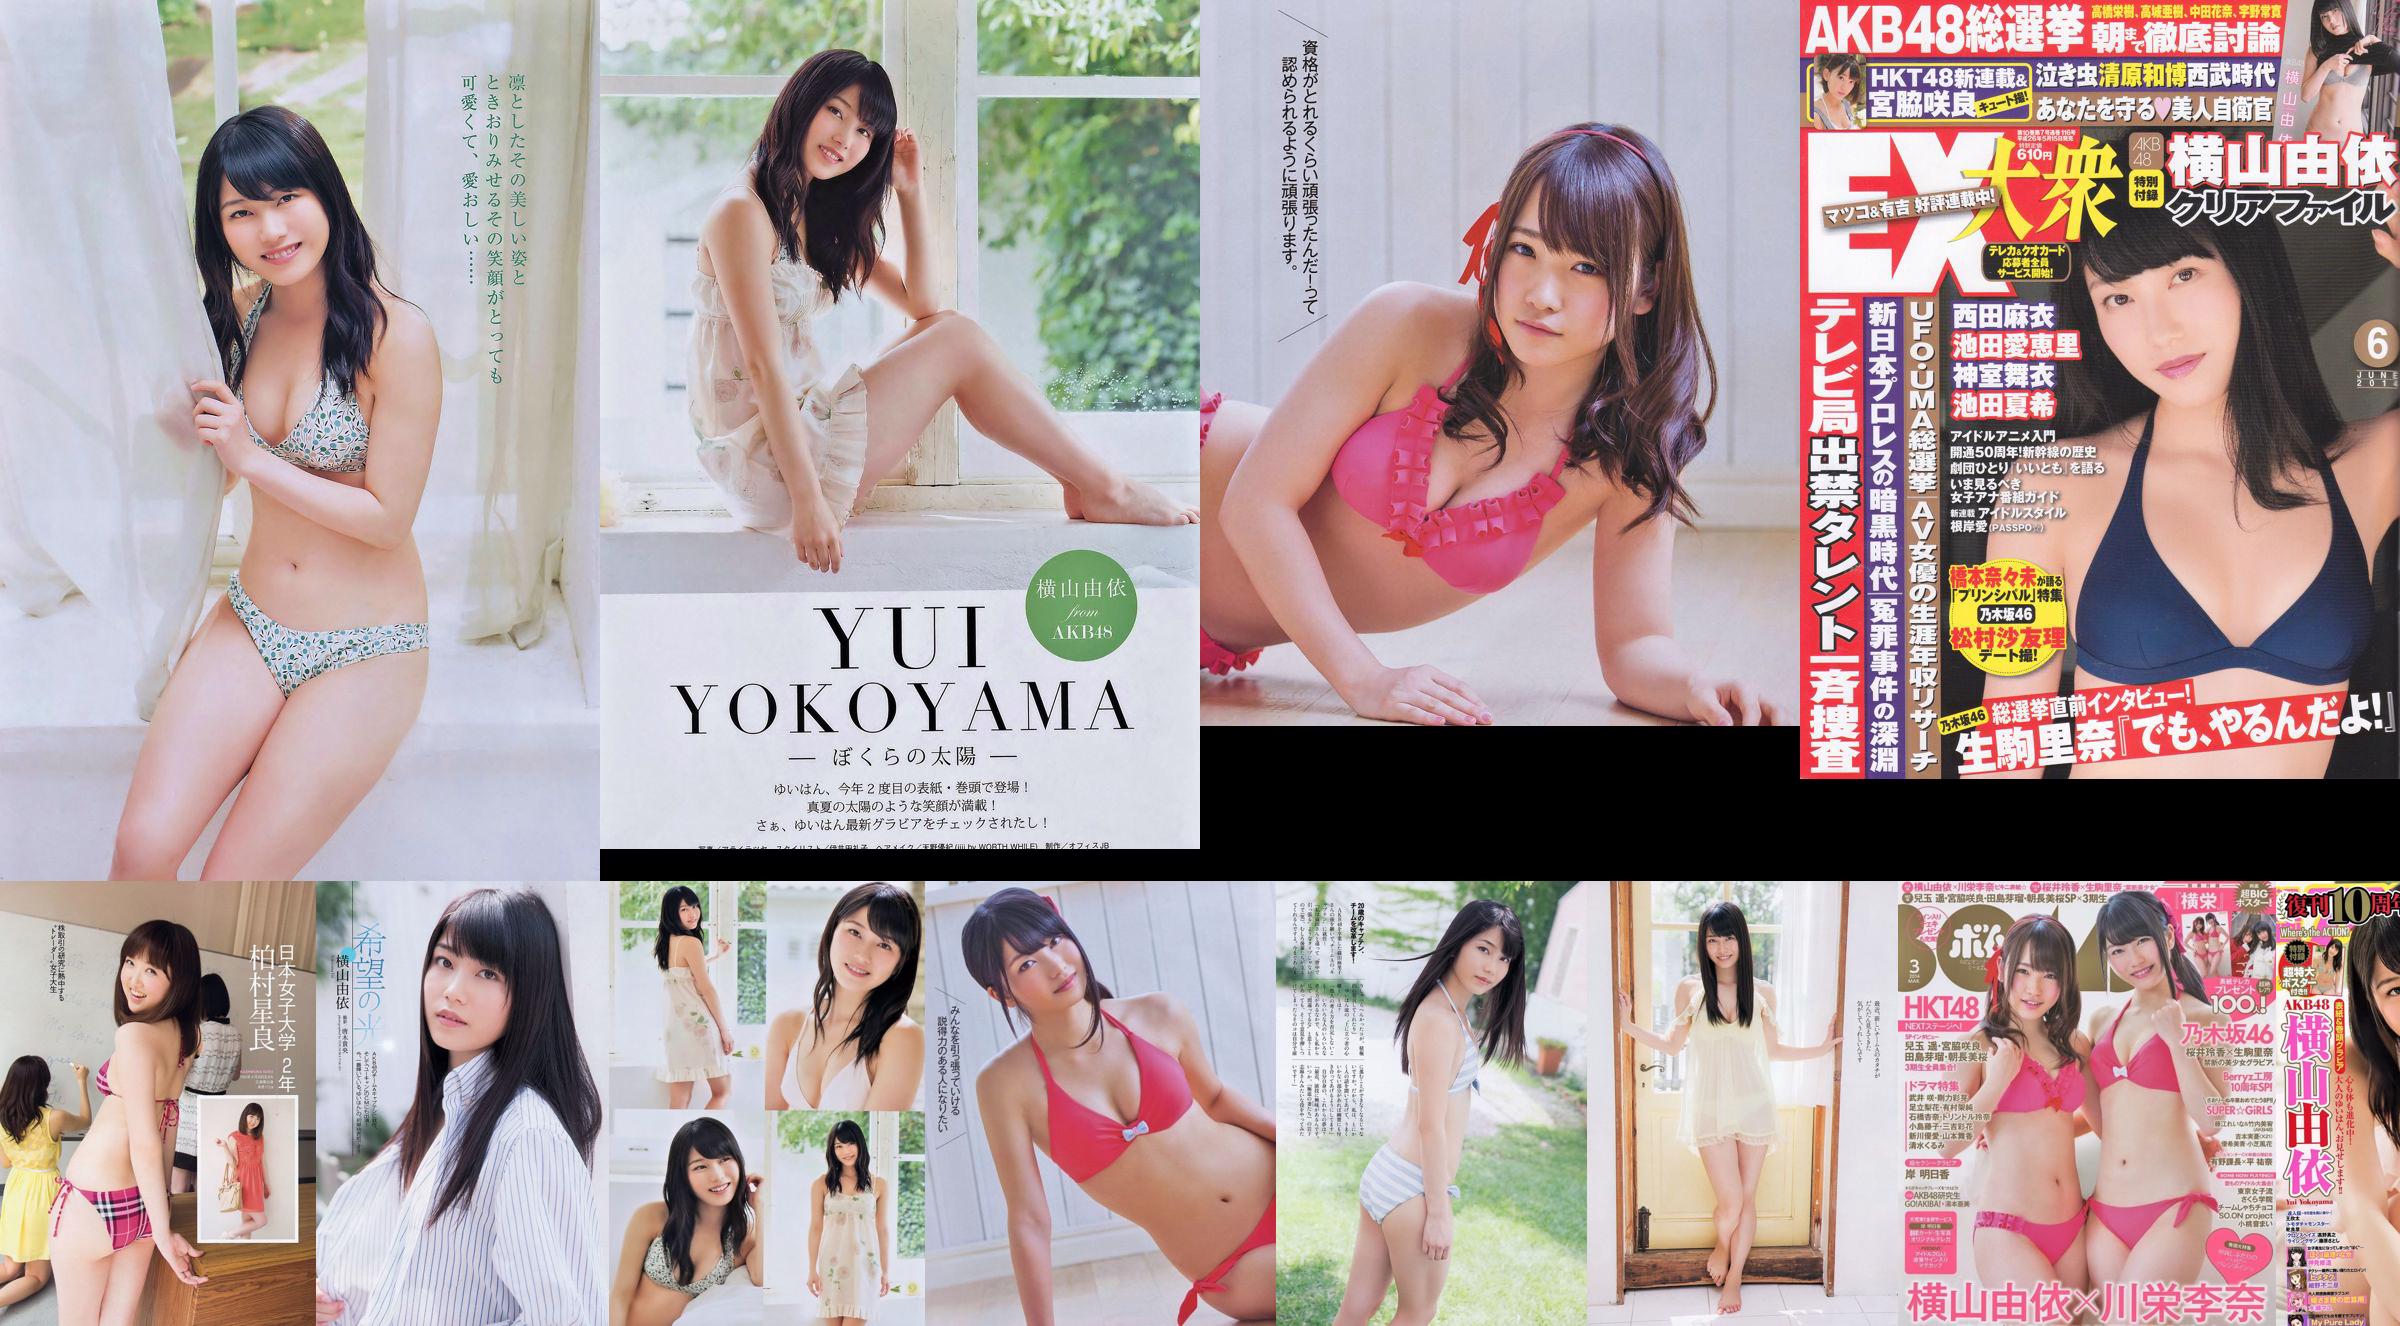 [Bomb Magazine] 2014 No.03 Yui Yokoyama Rina Kawaei Fotografía No.487043 Página 1